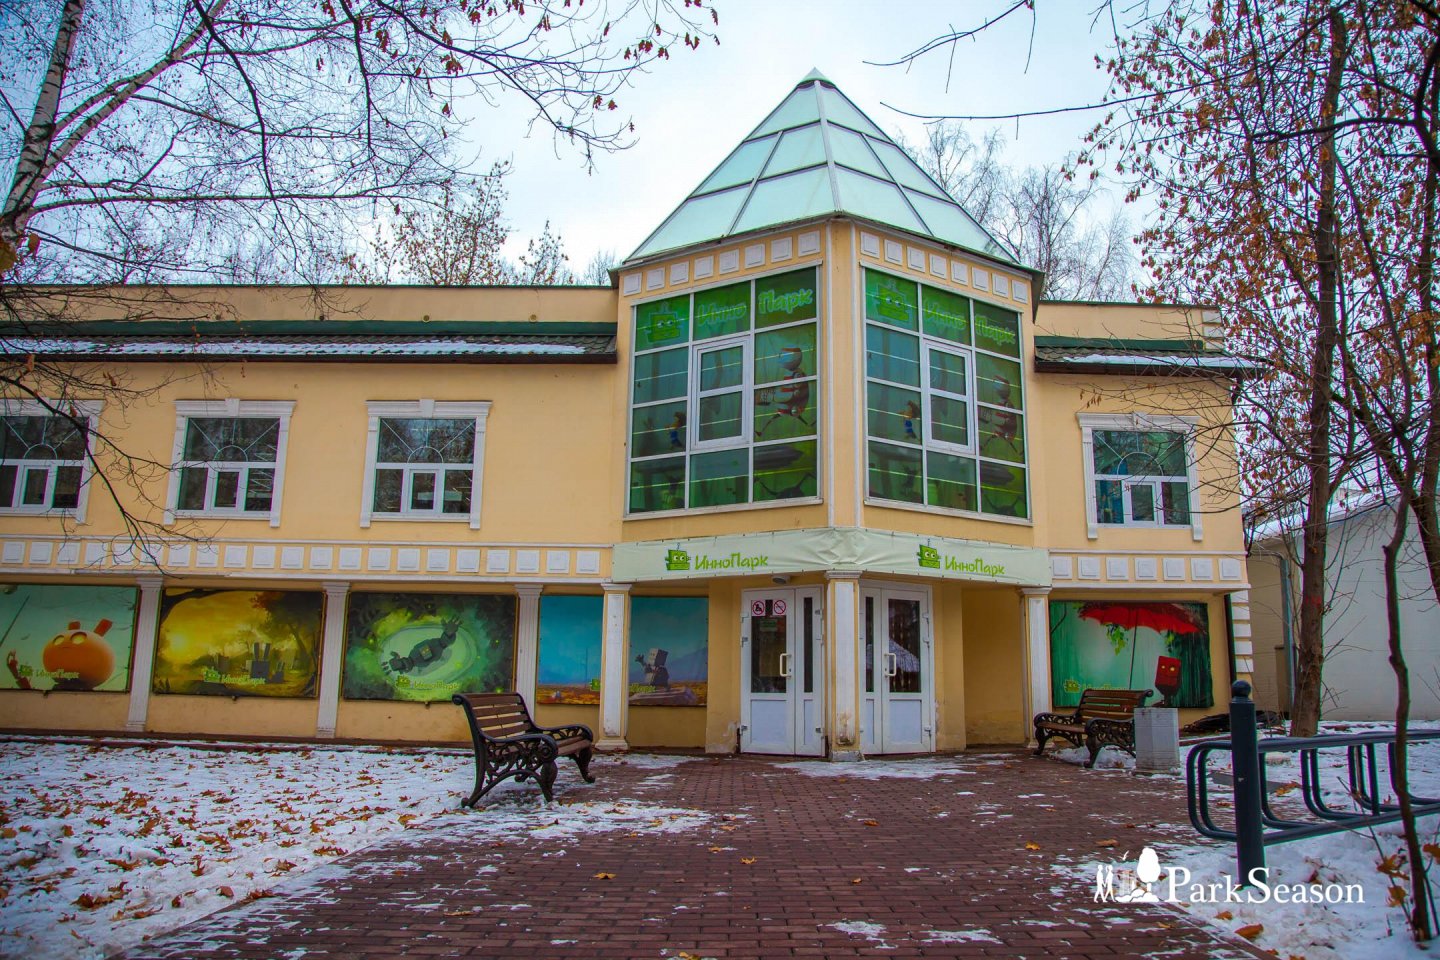 Детский центр научных открытий «ИнноПарк» (Закрыт на реконструкцию) — ParkSeason